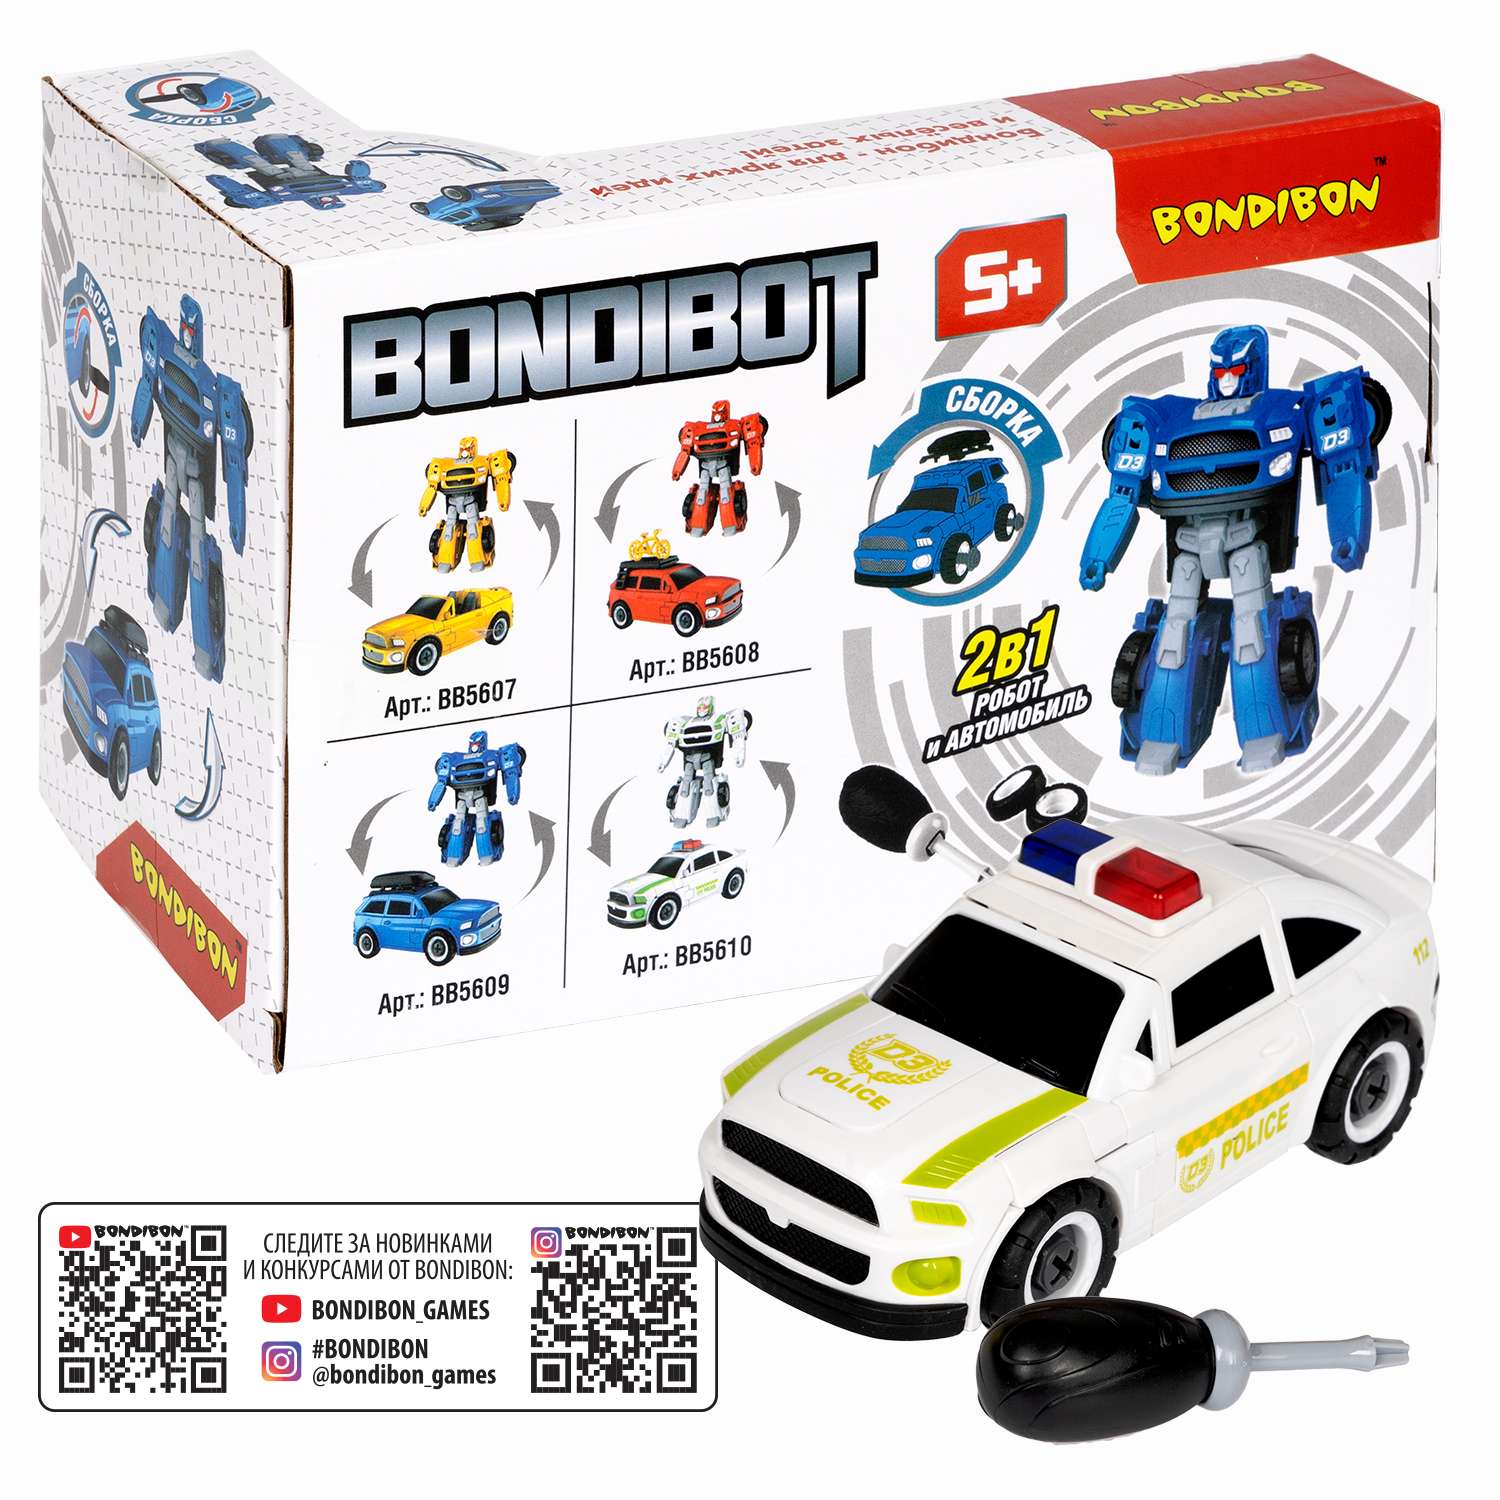 Трансформер BONDIBON Bondibot Робот-автомобиль 2 в 1 с отвёрткой Полиция белого цвета - фото 12